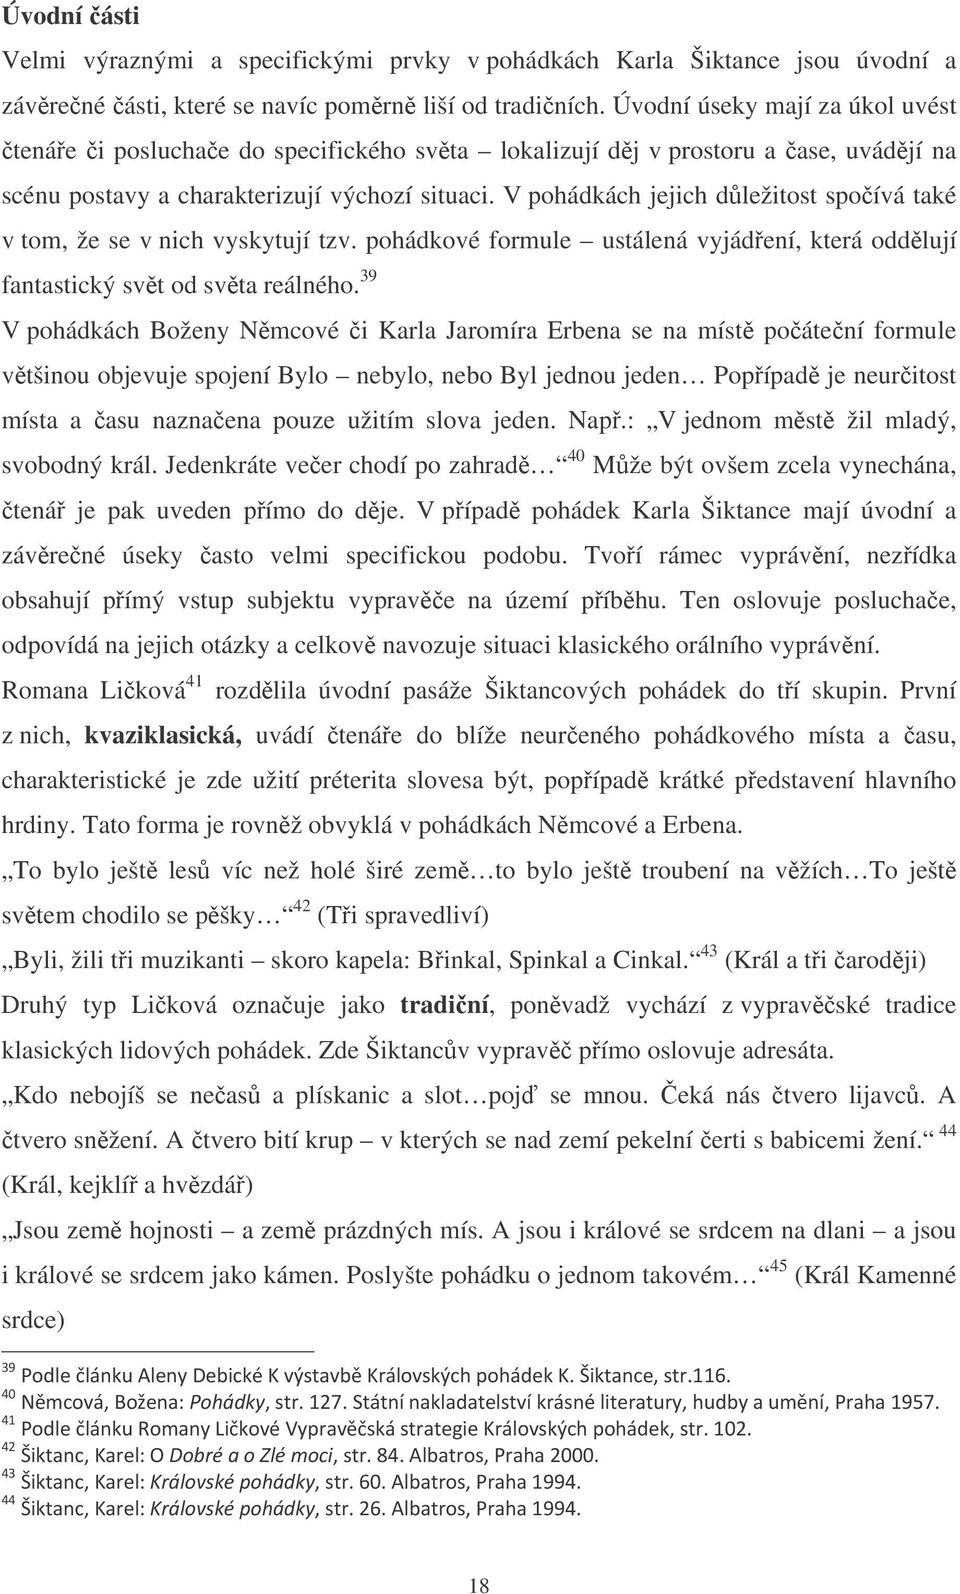 Motivy v pohádkách Karla Šiktance - PDF Stažení zdarma